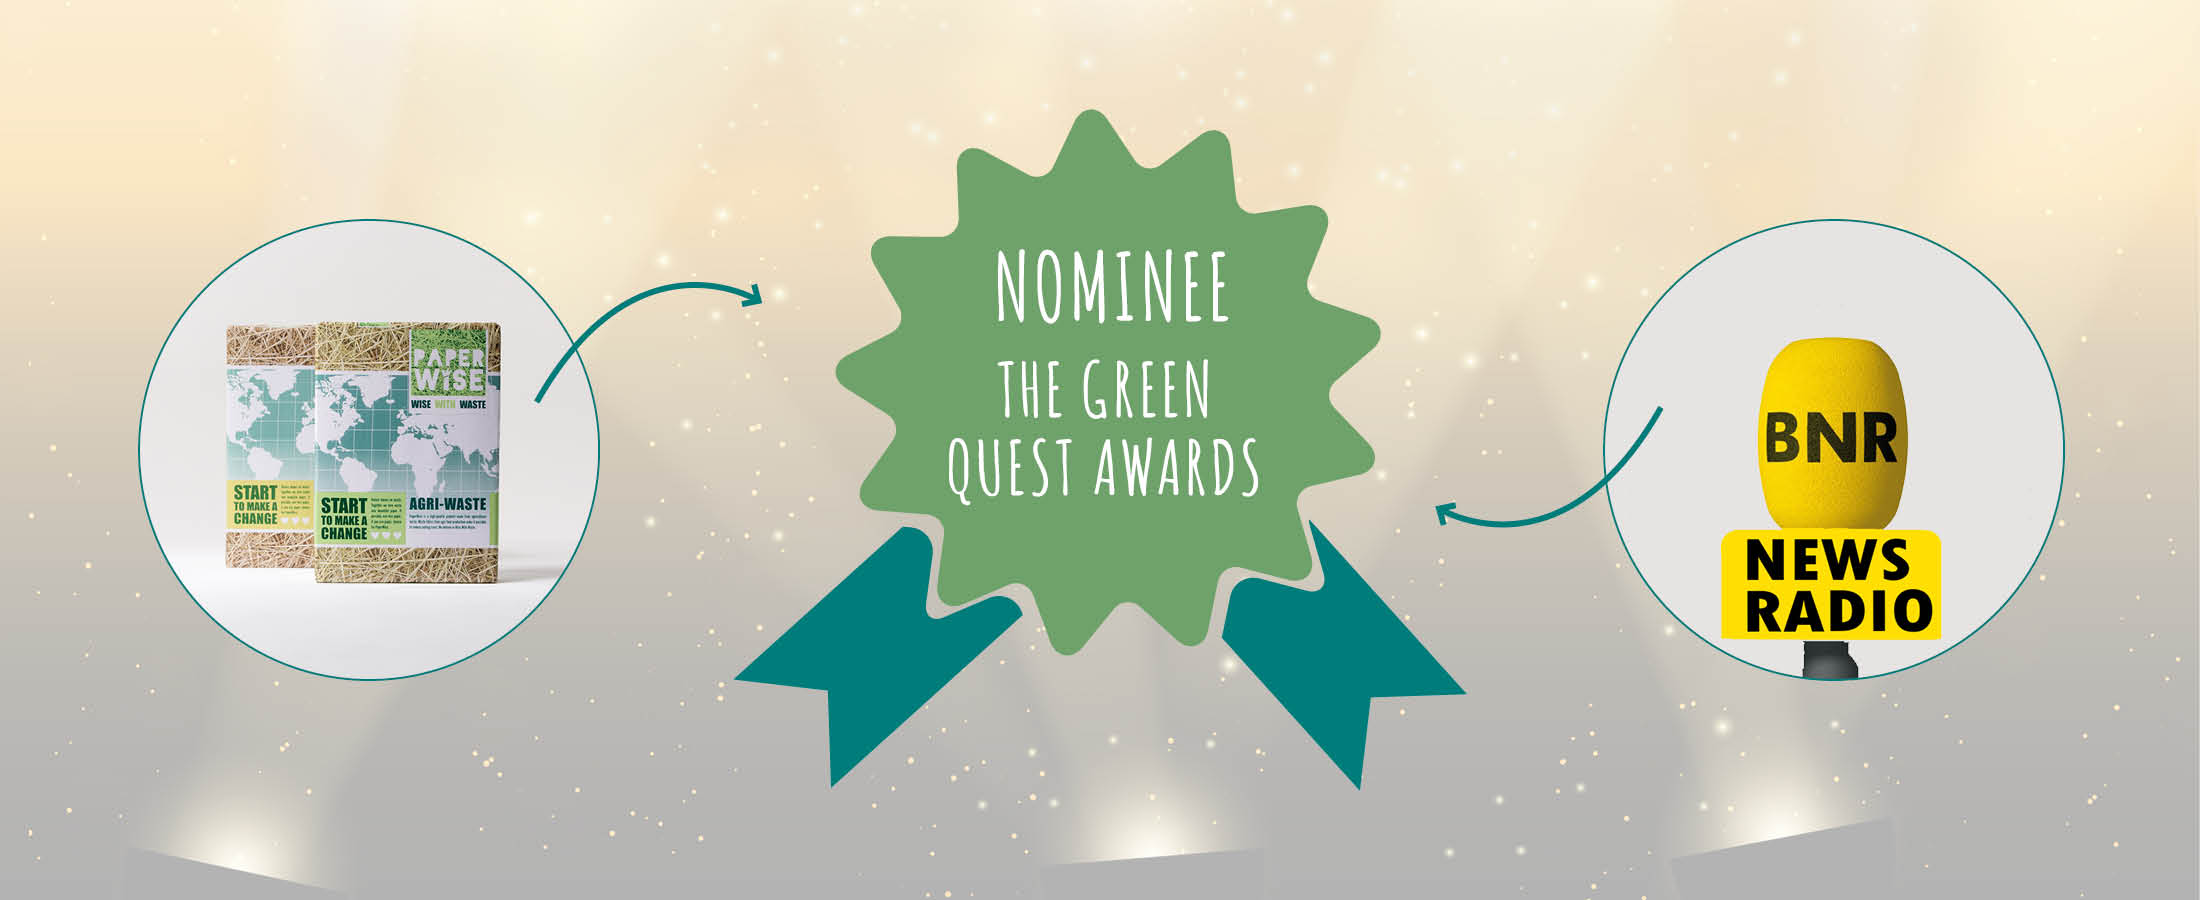 PaperWise nominada para los premios The Green Quest de la radio de noticias BNR